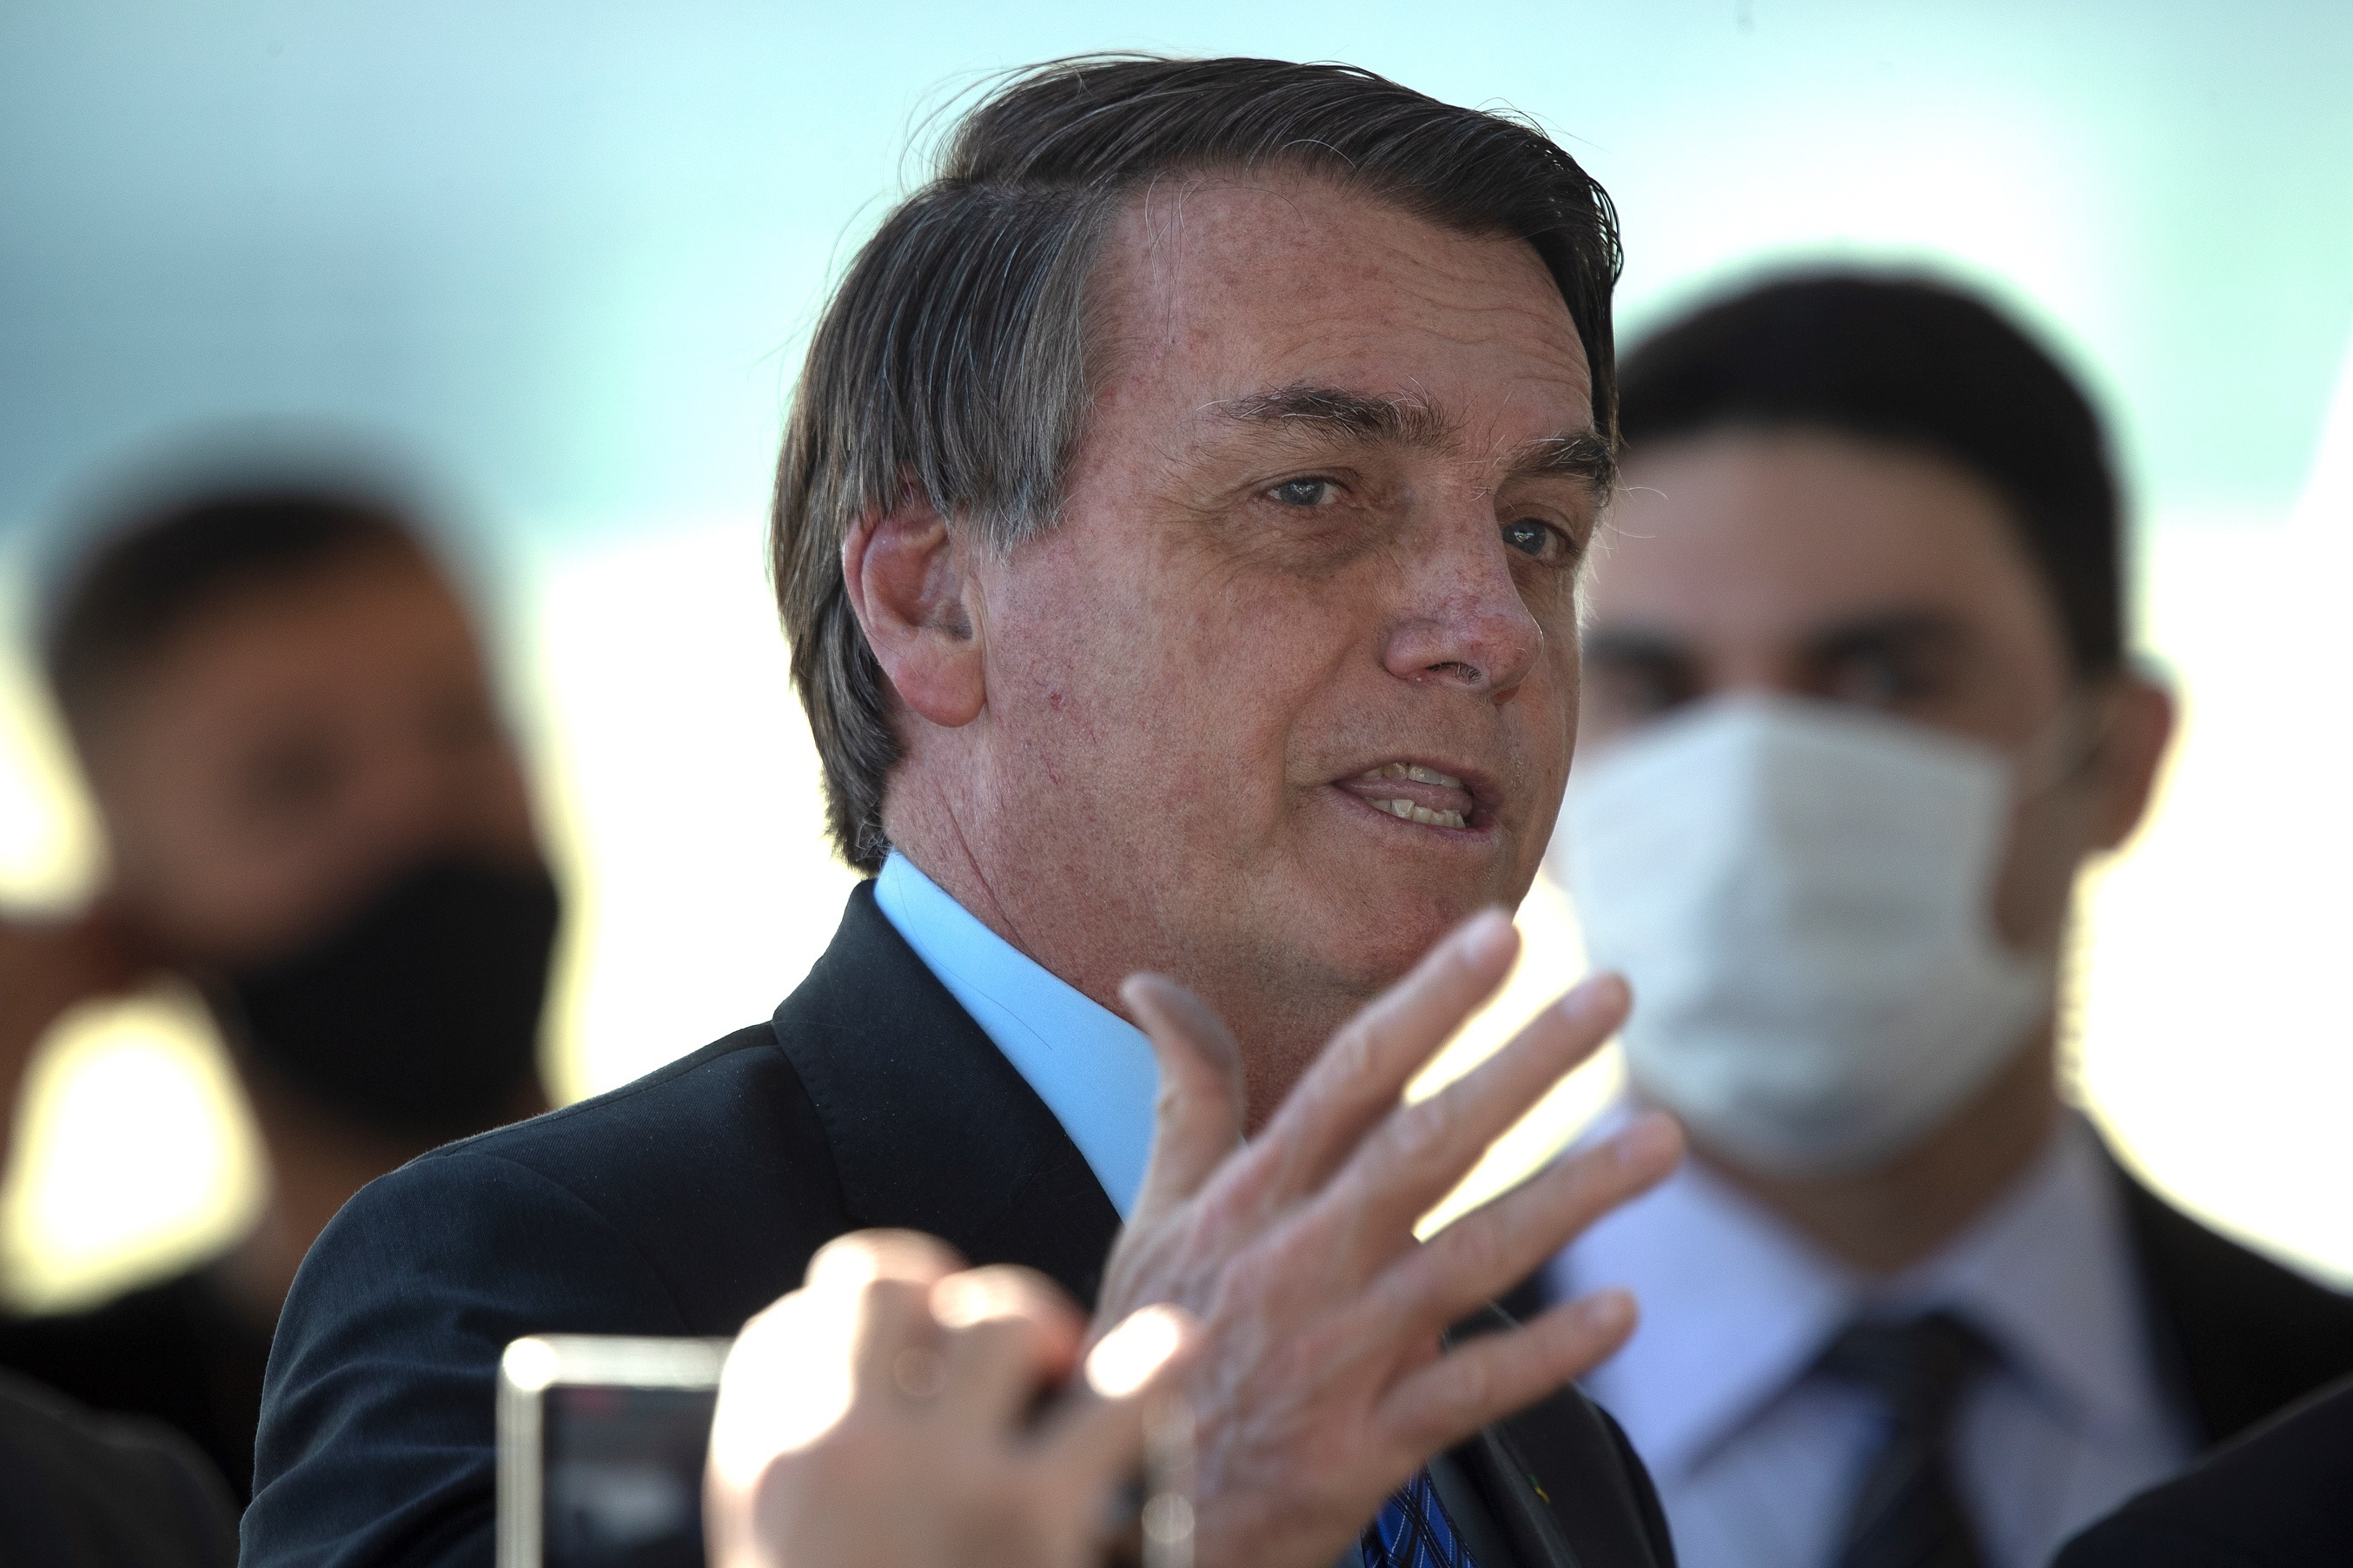 Justicia electoral investigará a Bolsonaro por quejas sobre el voto electrónico en Brasil